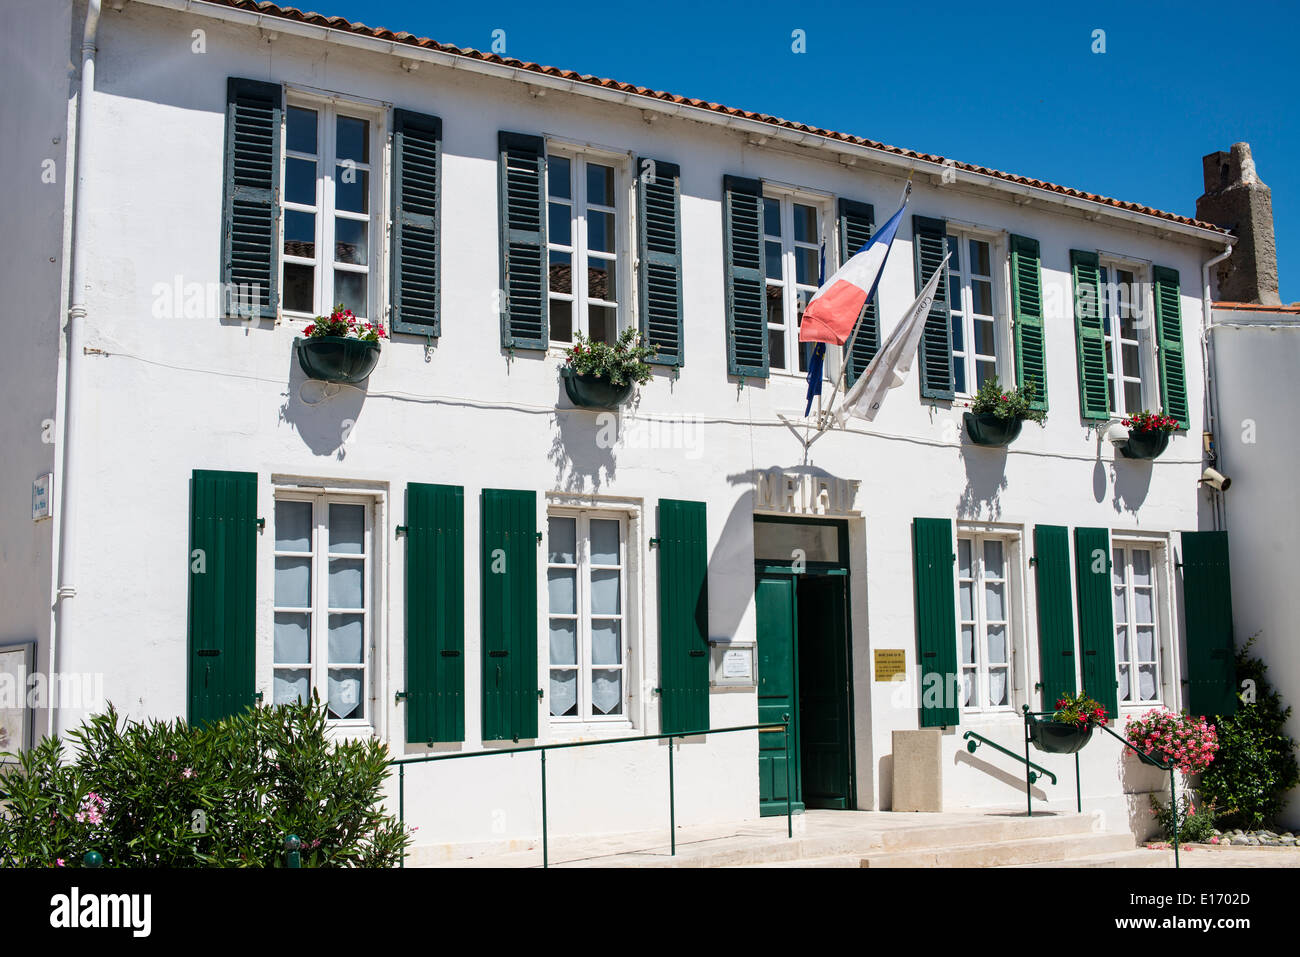 Town Hall, Ars en Re, Ile de Re, France Stock Photo